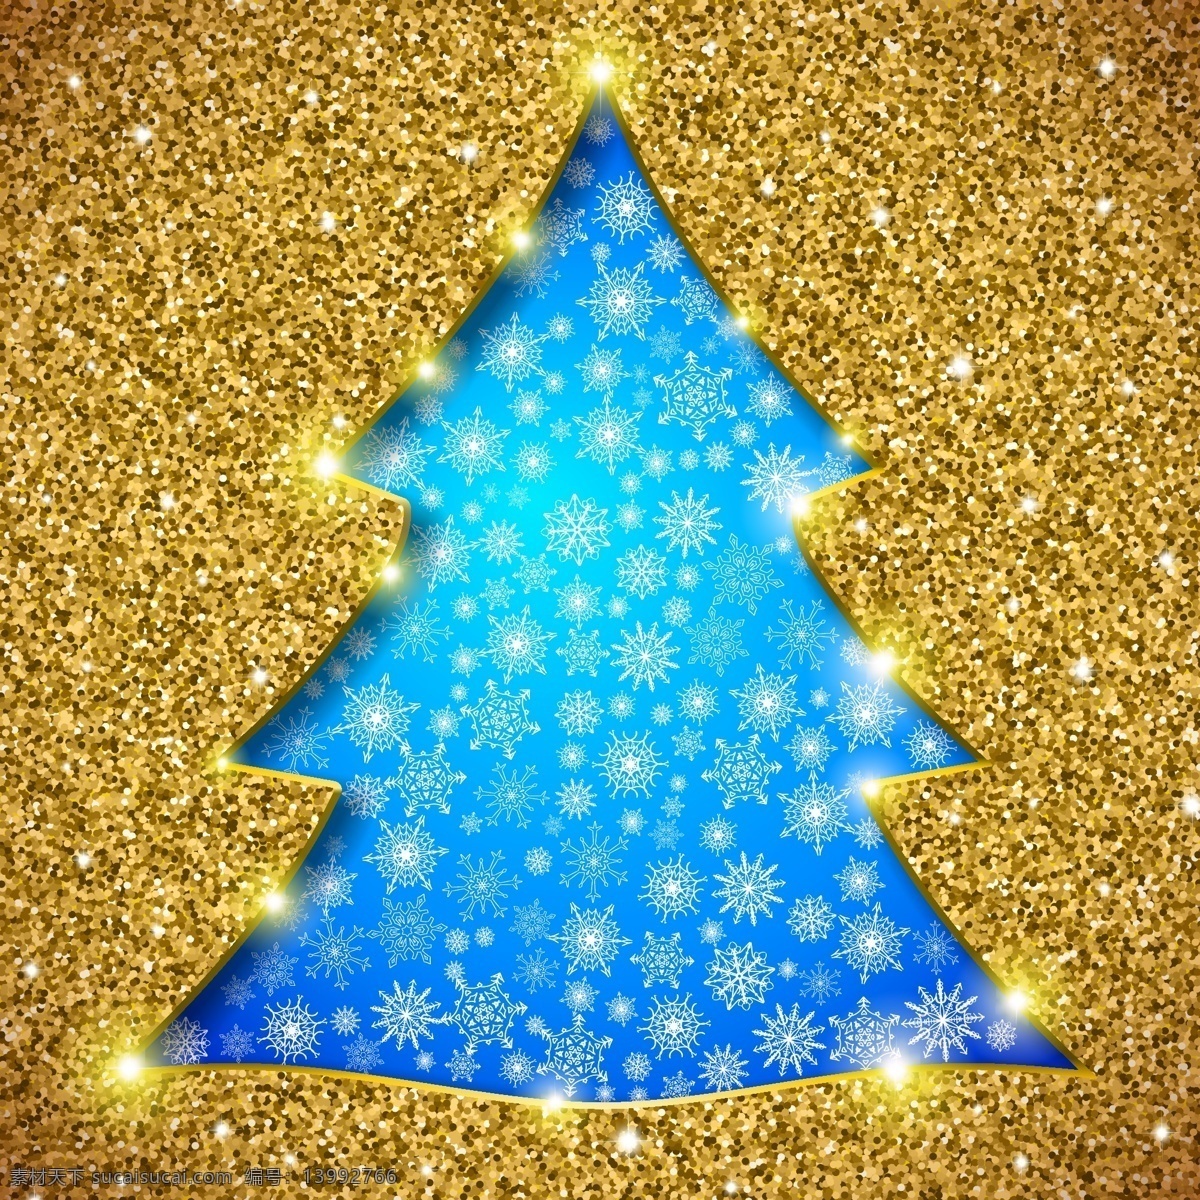 金色 底 图 圣诞树 矢量 圣诞素材 雪花背景 雪花 底图 金色金属底图 光 晕光斑 光芒 文化艺术 节日庆祝